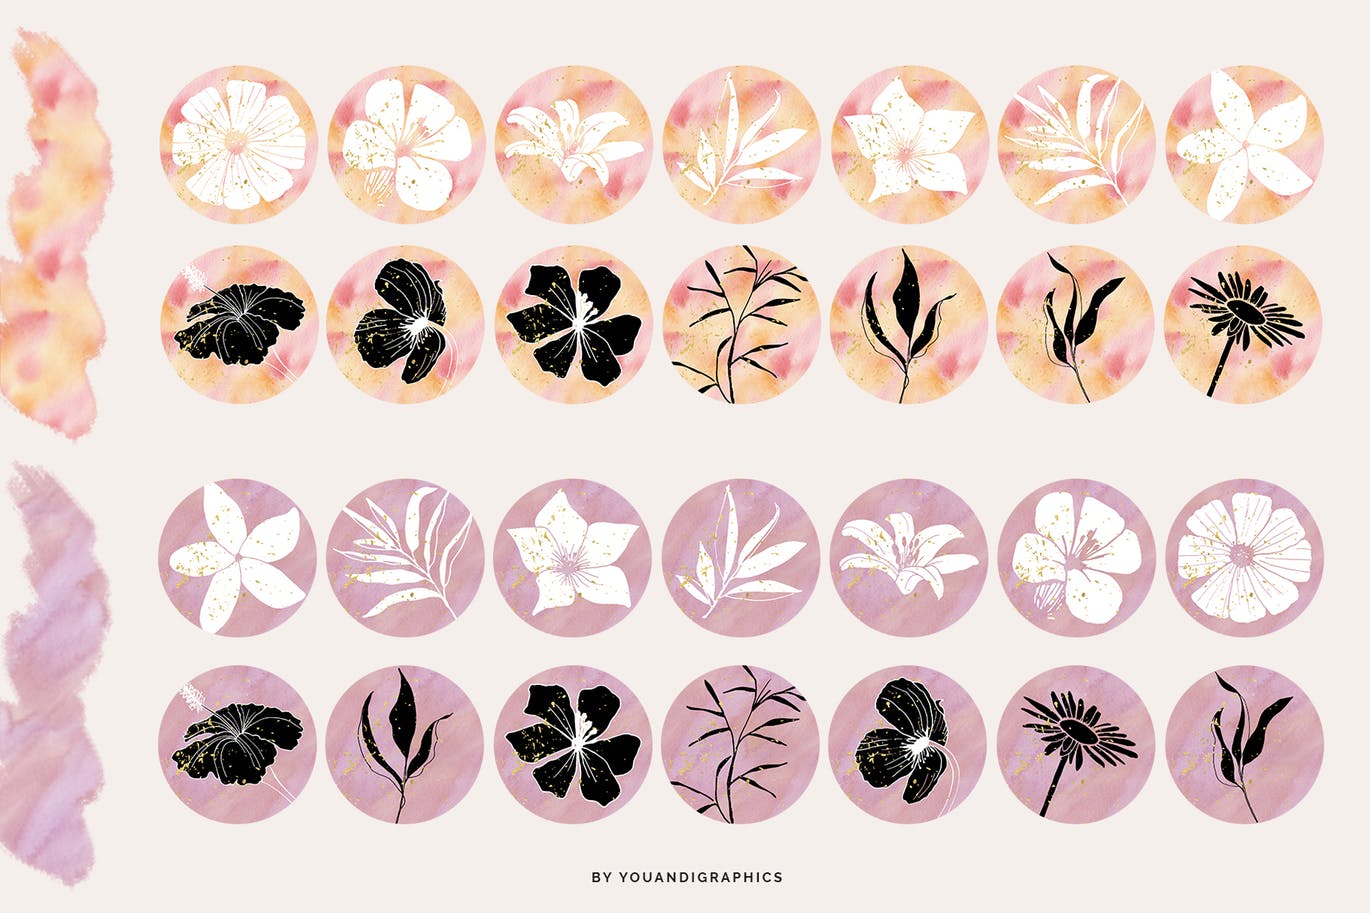 112个创意水彩花卉Instagram社交封面设计素材 Floral Instagram Highlight Covers插图(10)